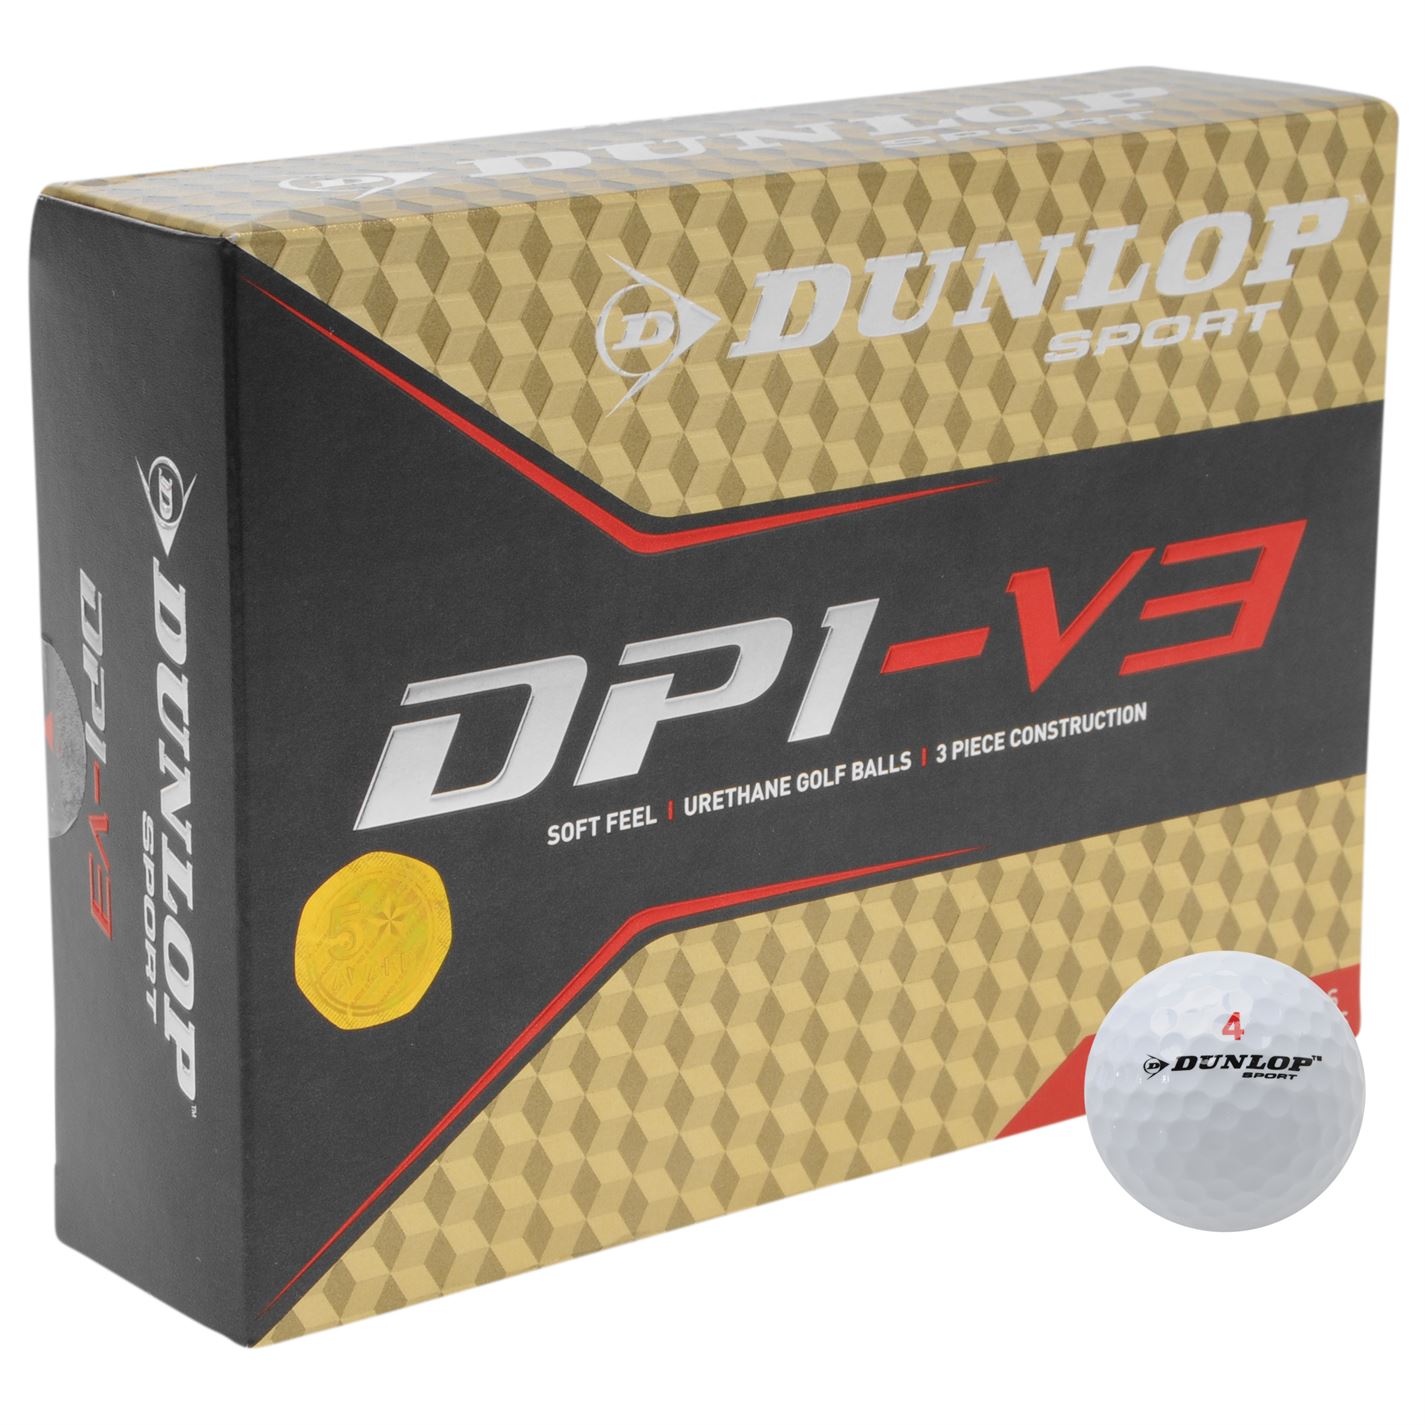 Dunlop DP1-V3 ball review